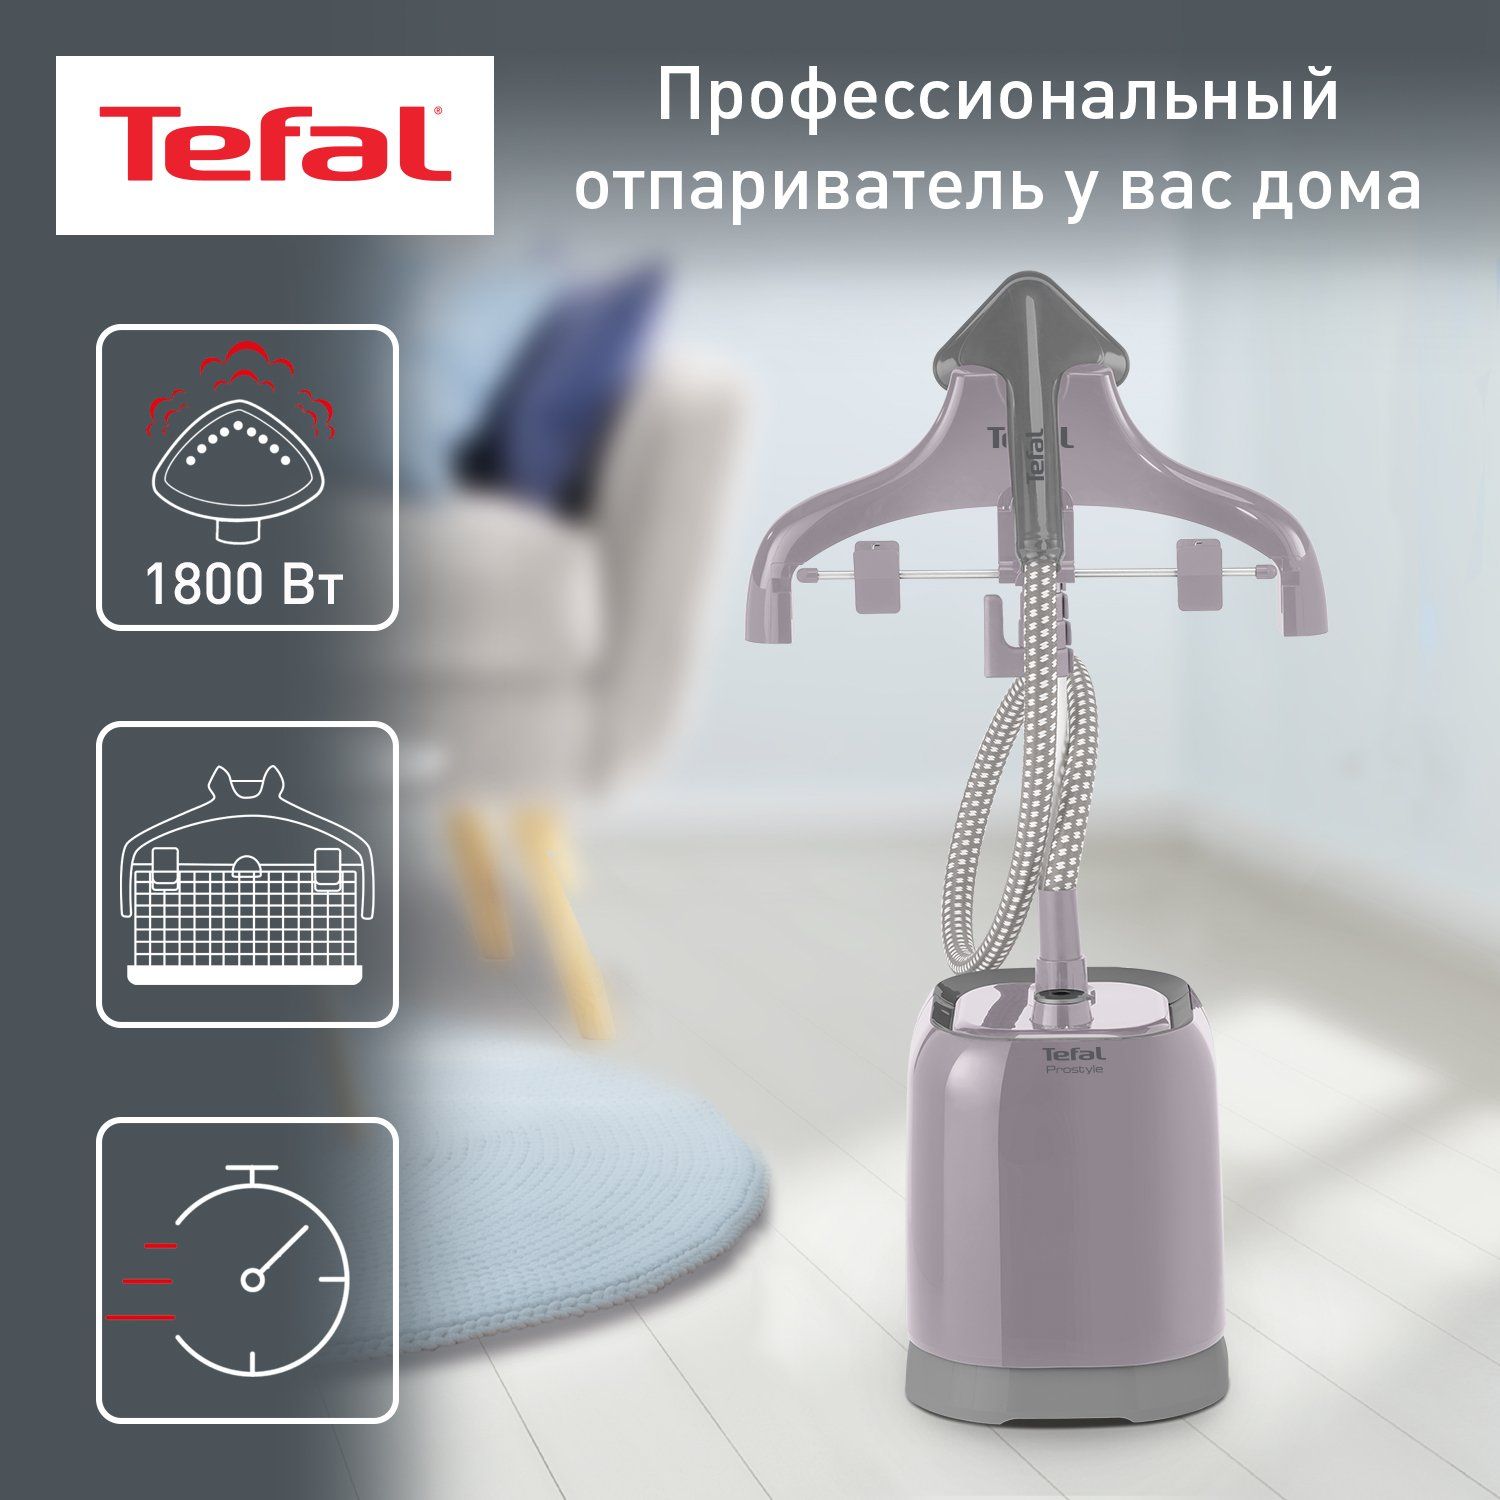 Вертикальный отпариватель Tefal Pro Style IT3450E0 напольный, 1.3 л, серый, купить в Москве, цены в интернет-магазинах на Мегамаркет